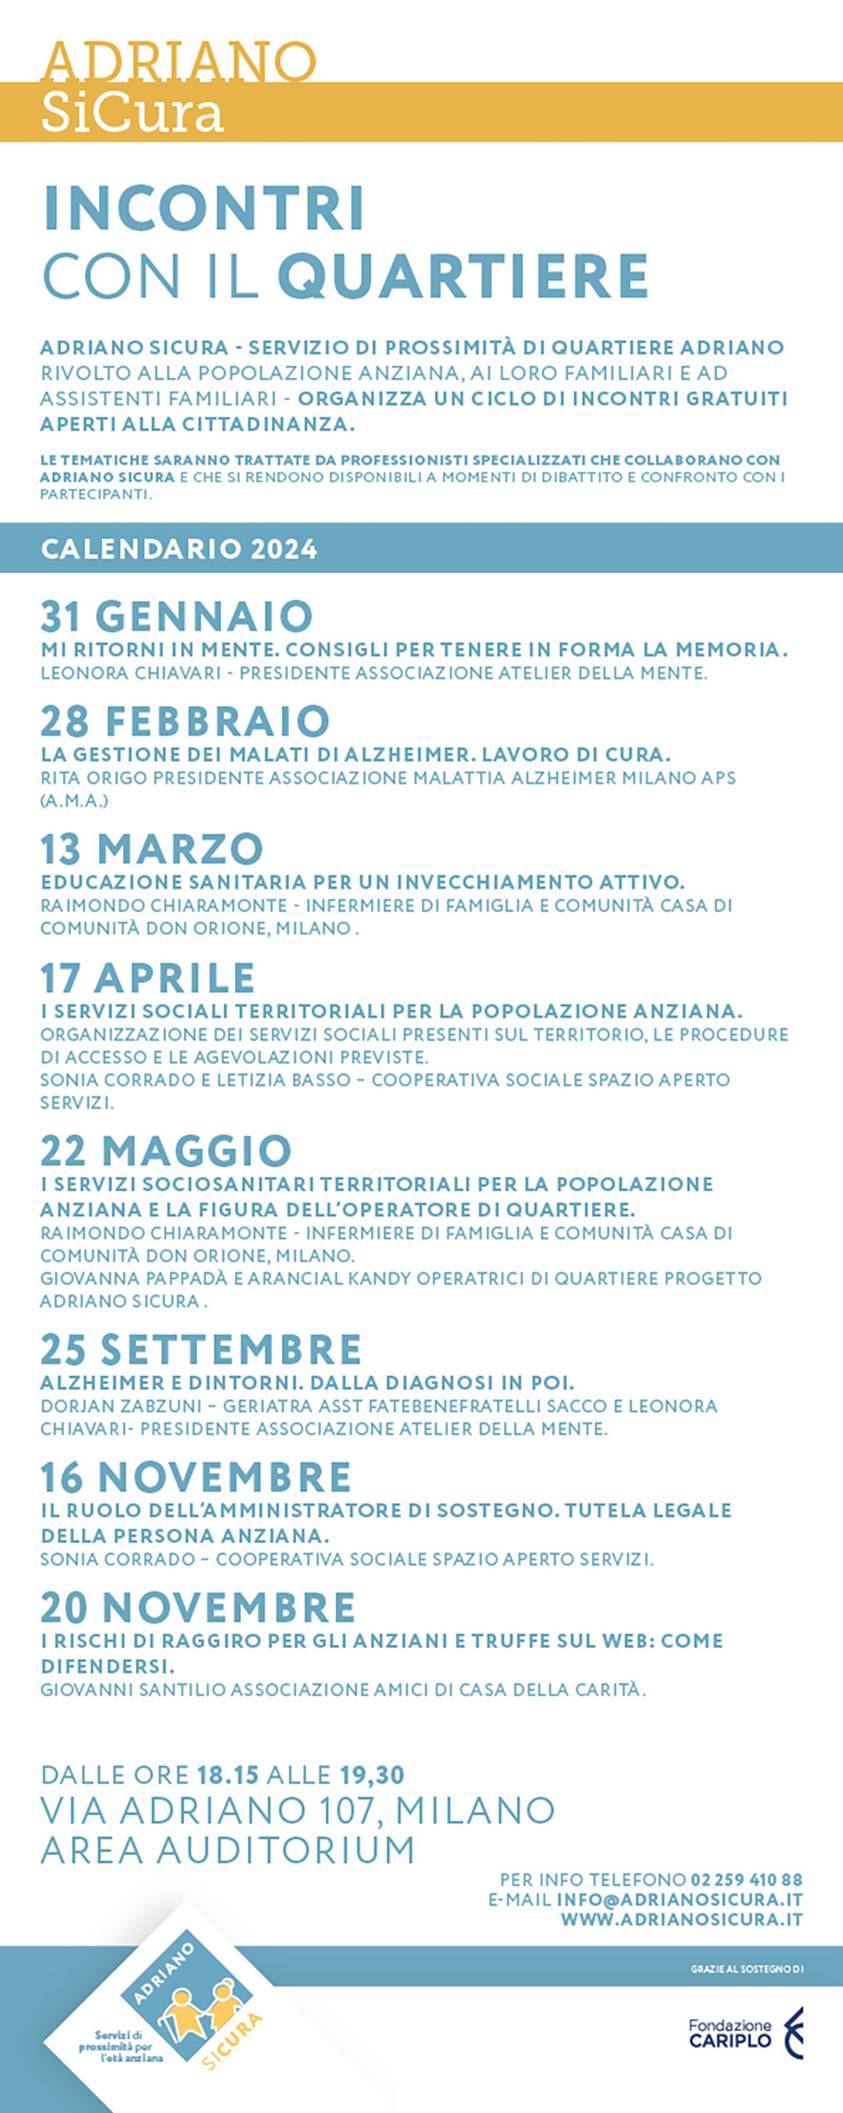 A.M.A. Milano - Ciclo di incontri gratuiti socio - sanitari presso Auditorium Adriano Community Center